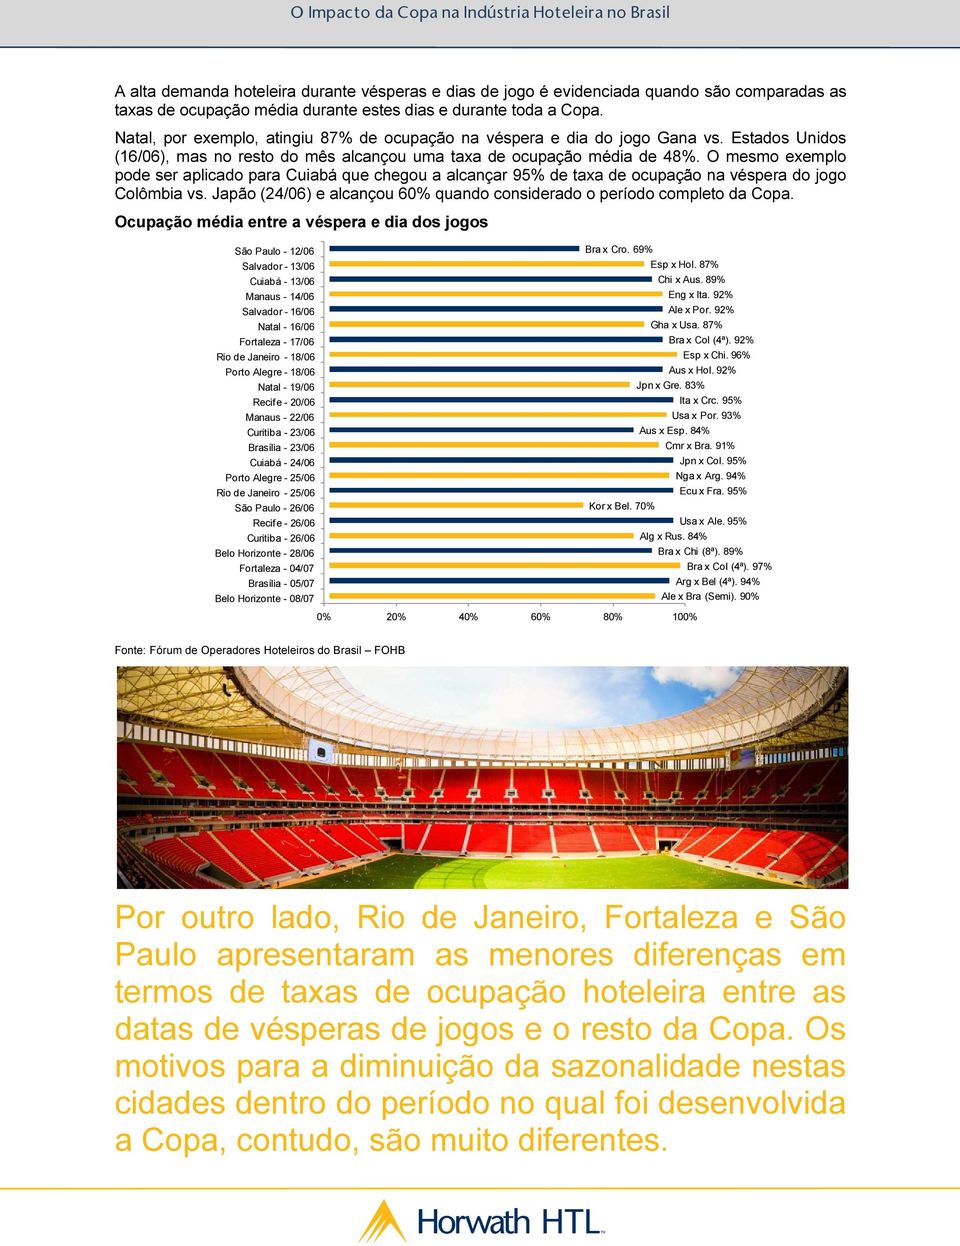 O mesmo exemplo pode ser aplicado para Cuiabá que chegou a alcançar 95% de taxa de ocupação na véspera do jogo Colômbia vs. Japão (24/06) e alcançou 6 quando considerado o período completo da Copa.